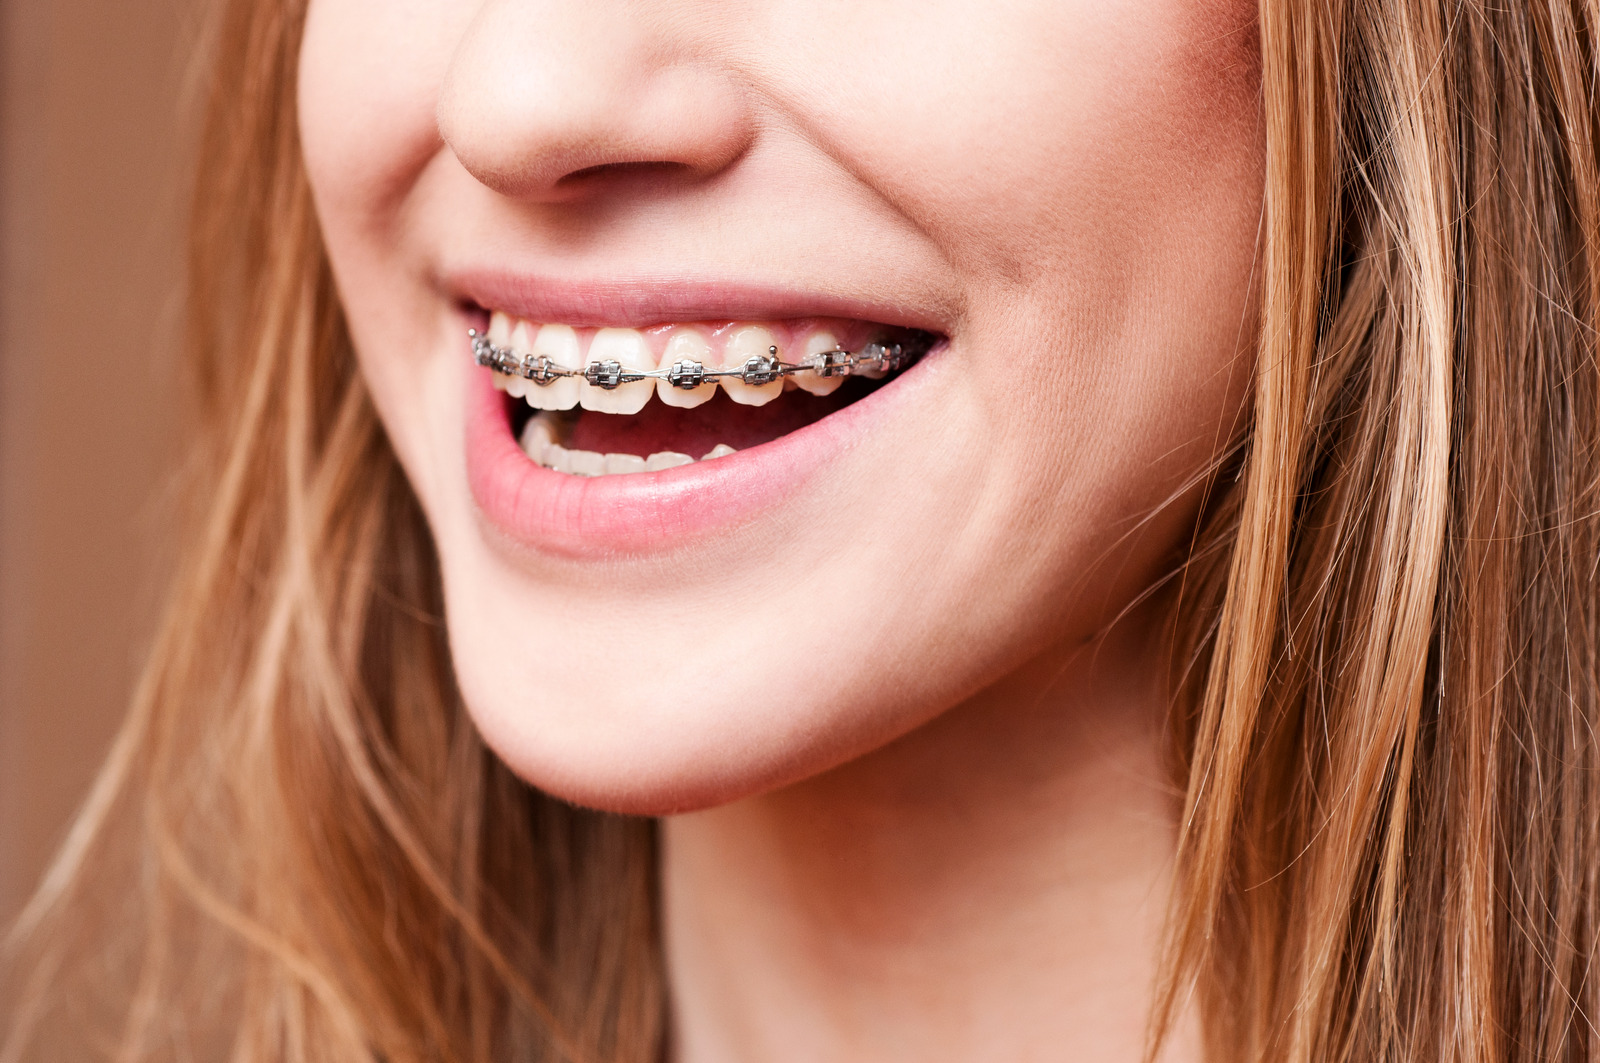 前牙開咬的矯正方法包括傳統牙箍及隱形牙箍矯正